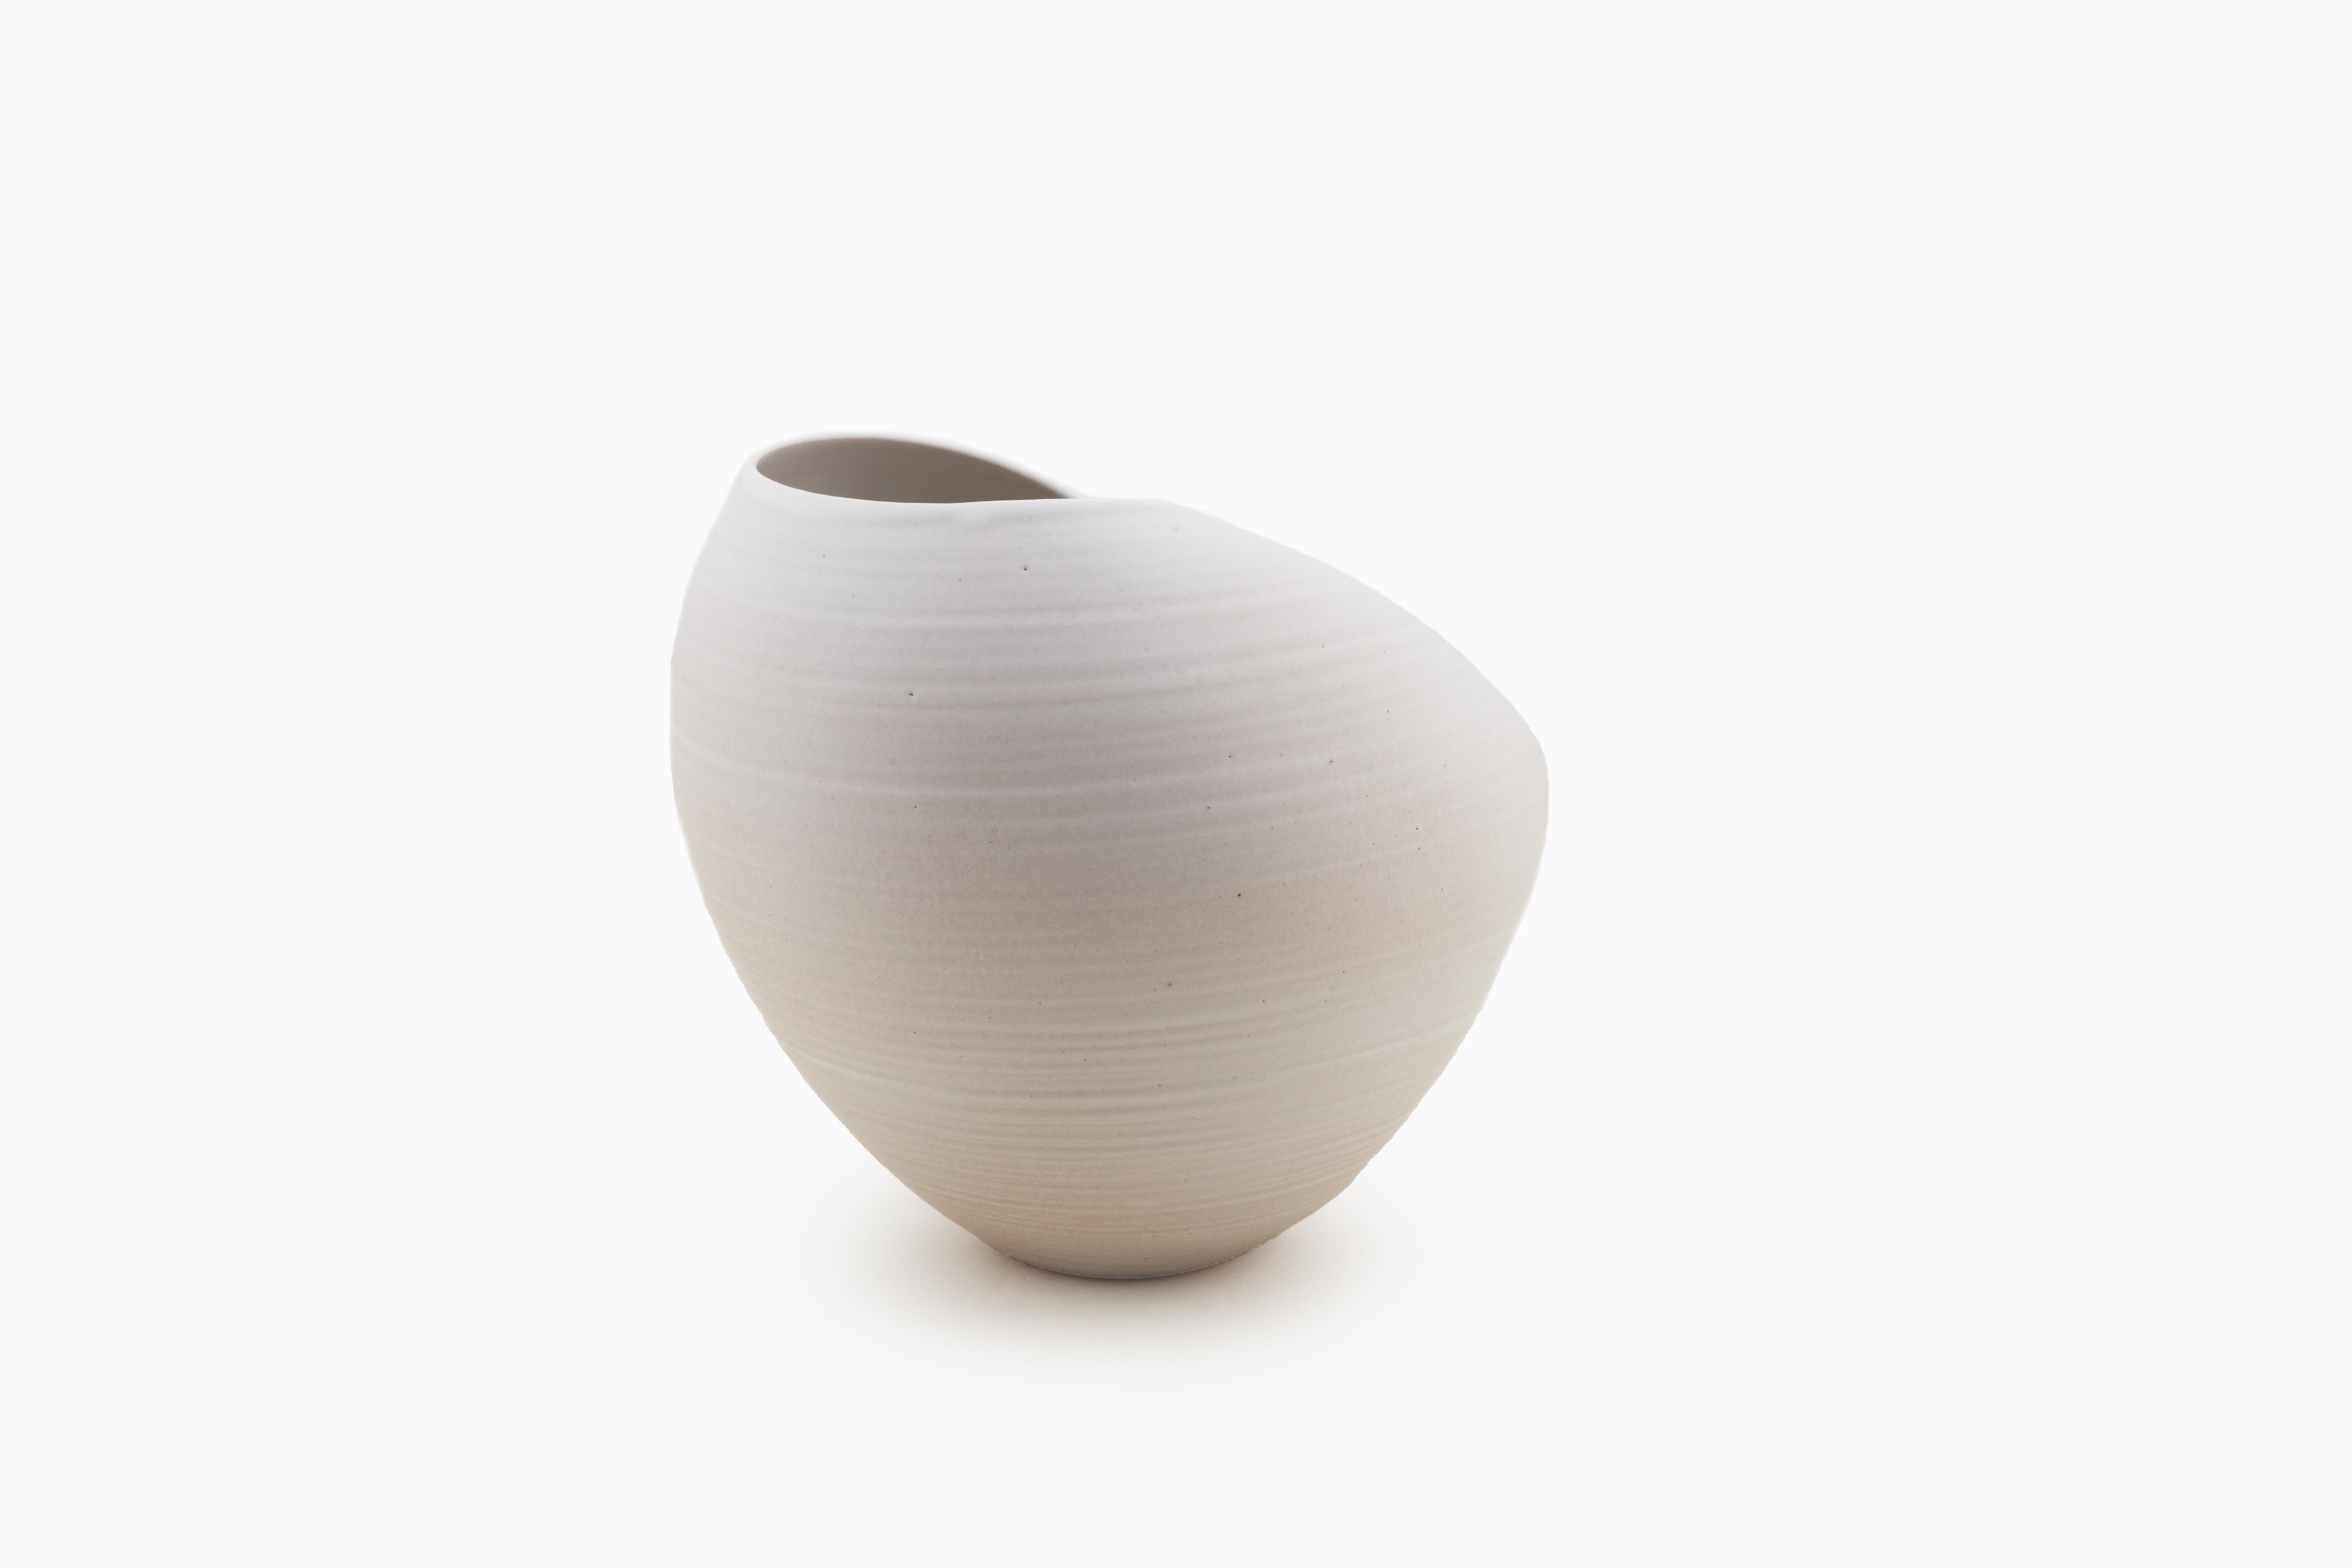 Spanish White Oval Form, Vase, Interior Sculpture or Vessel, Objet D'Art